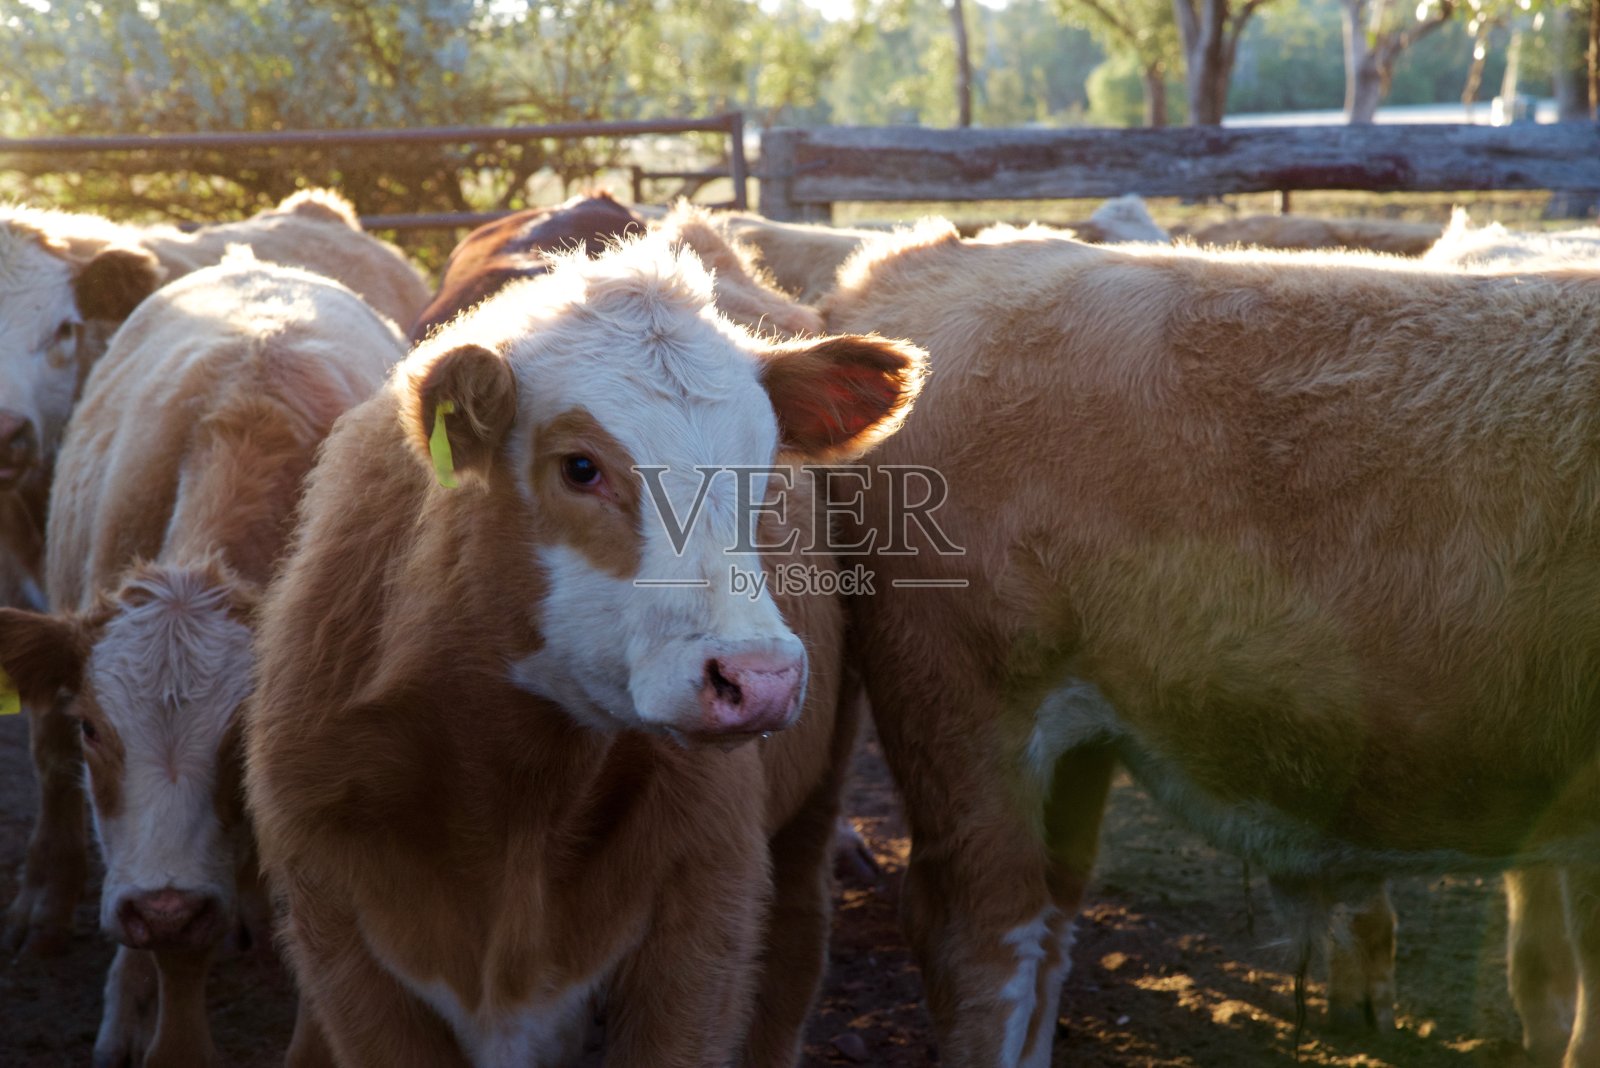 院子里的小牛们靠得很近照片摄影图片